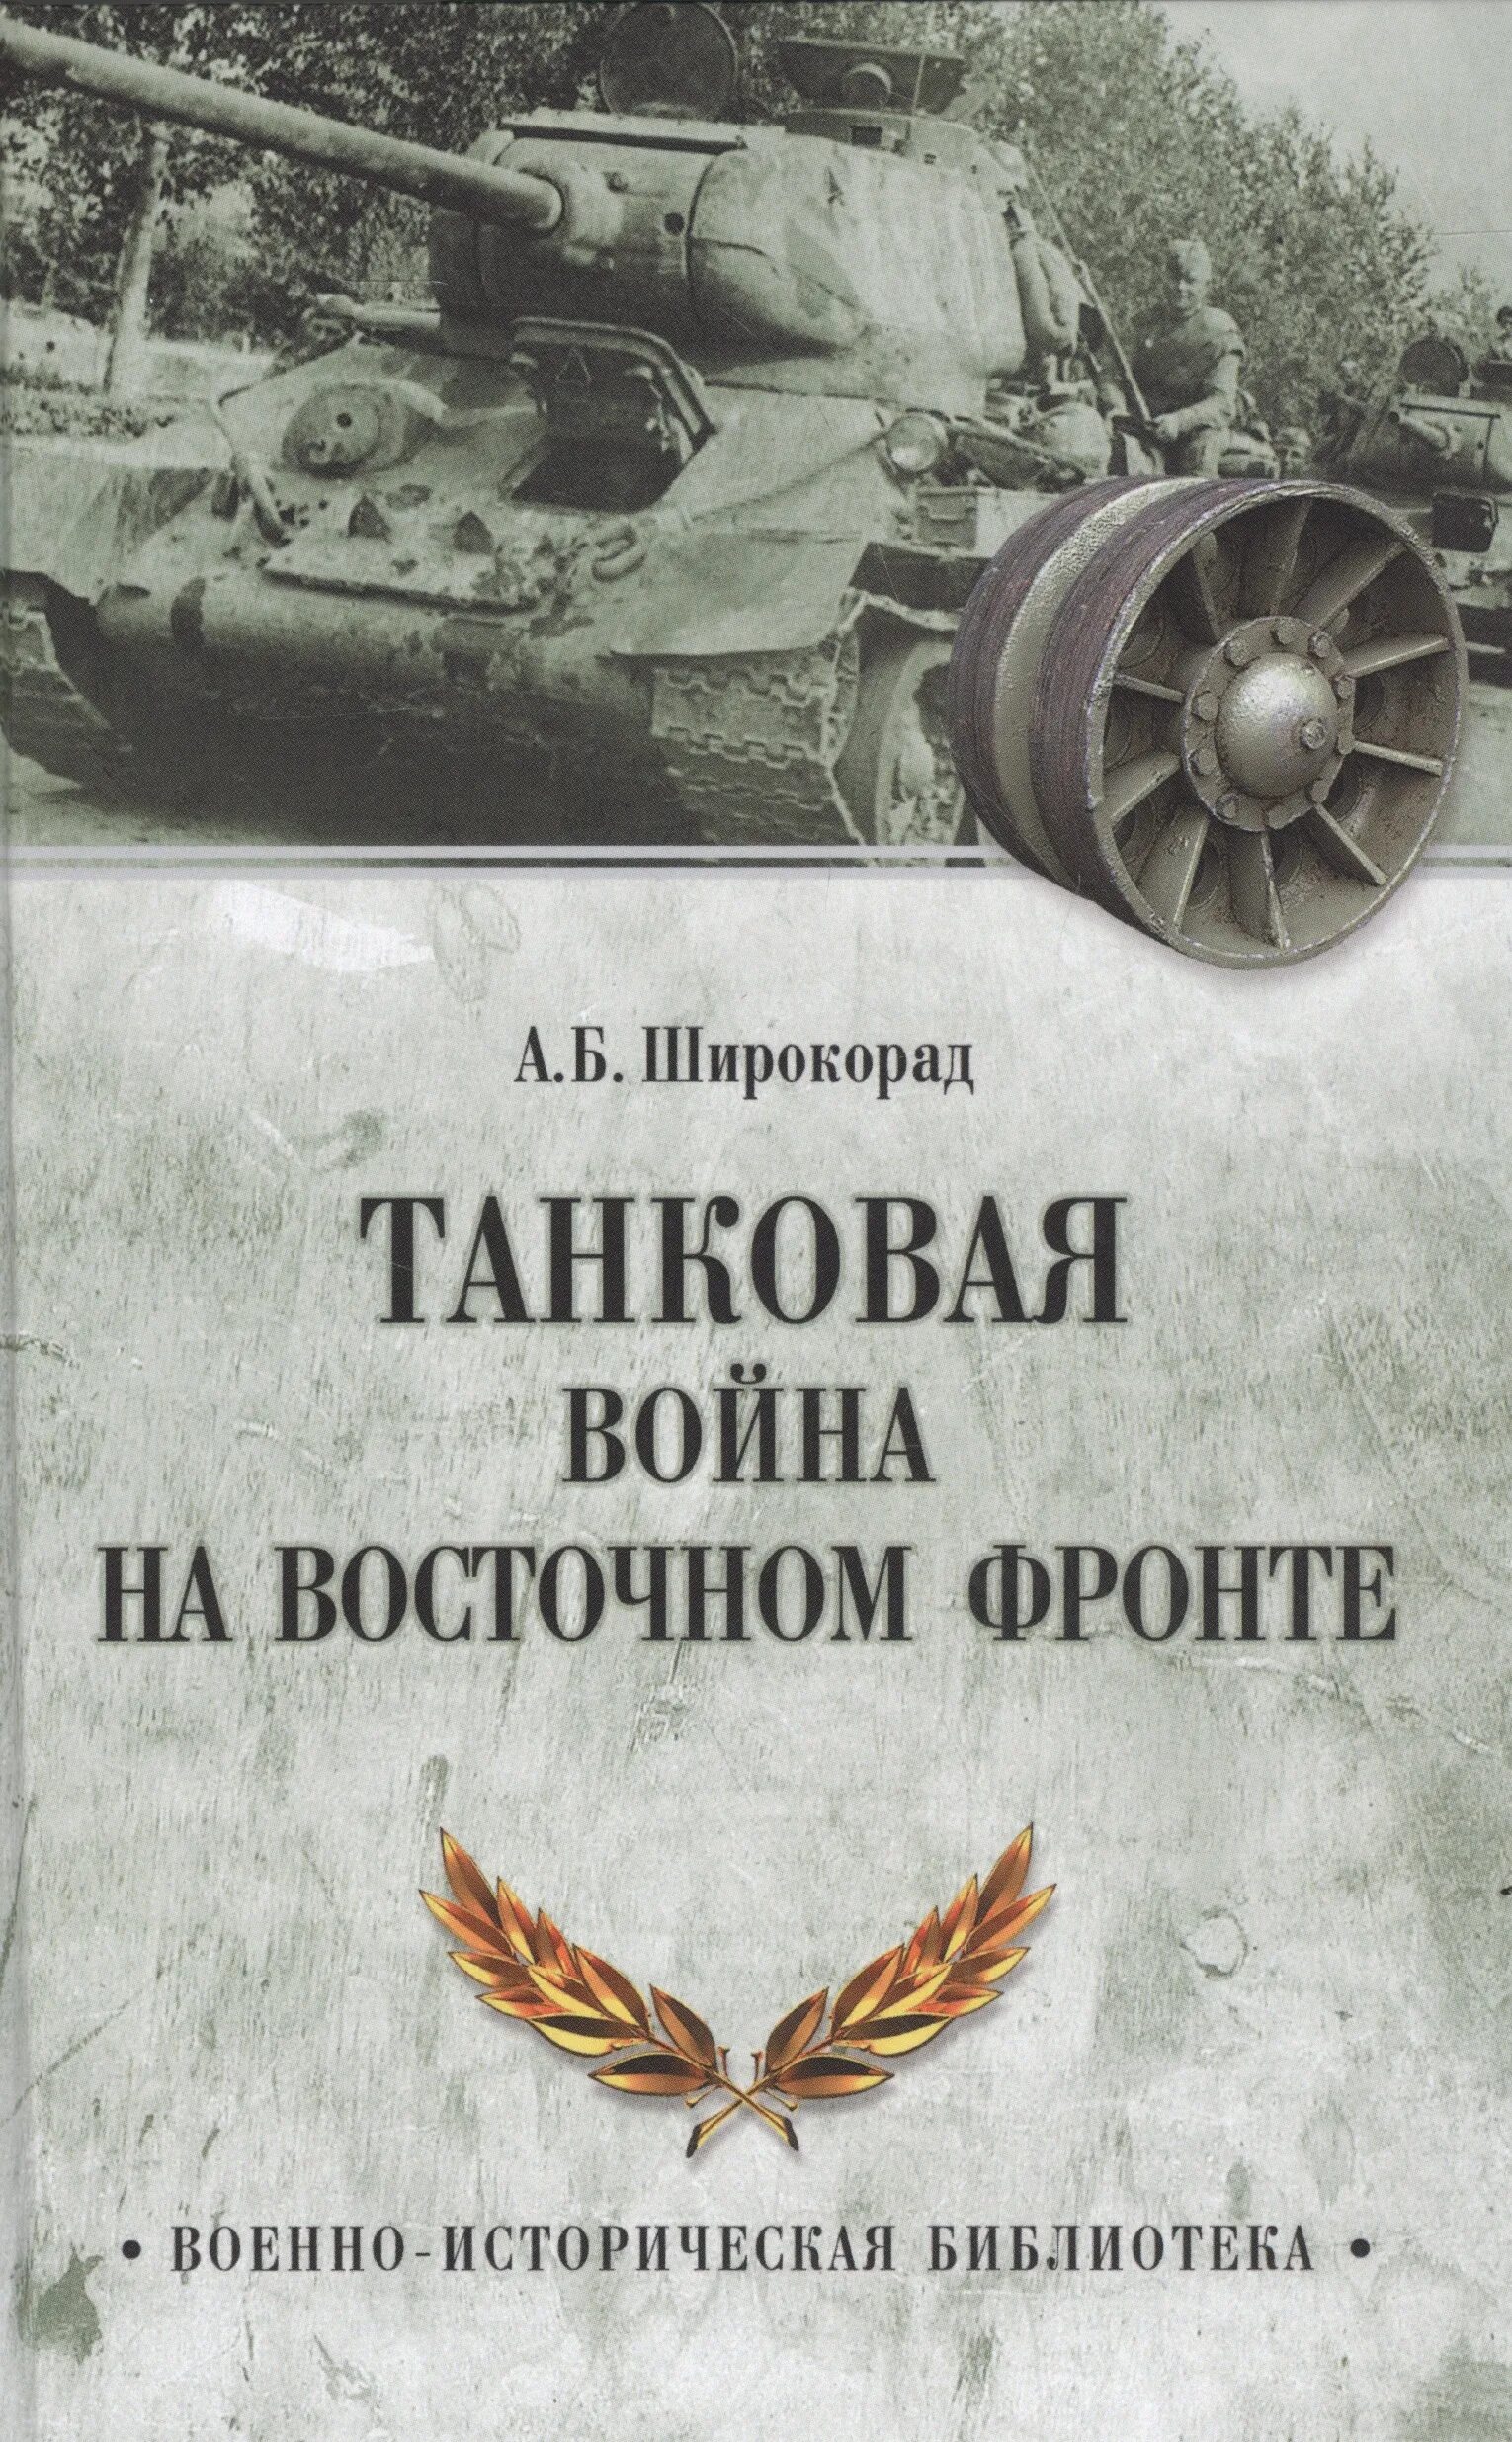 Книга про немецких танкистов. Широкорад битва за Крым. Широкорад книги